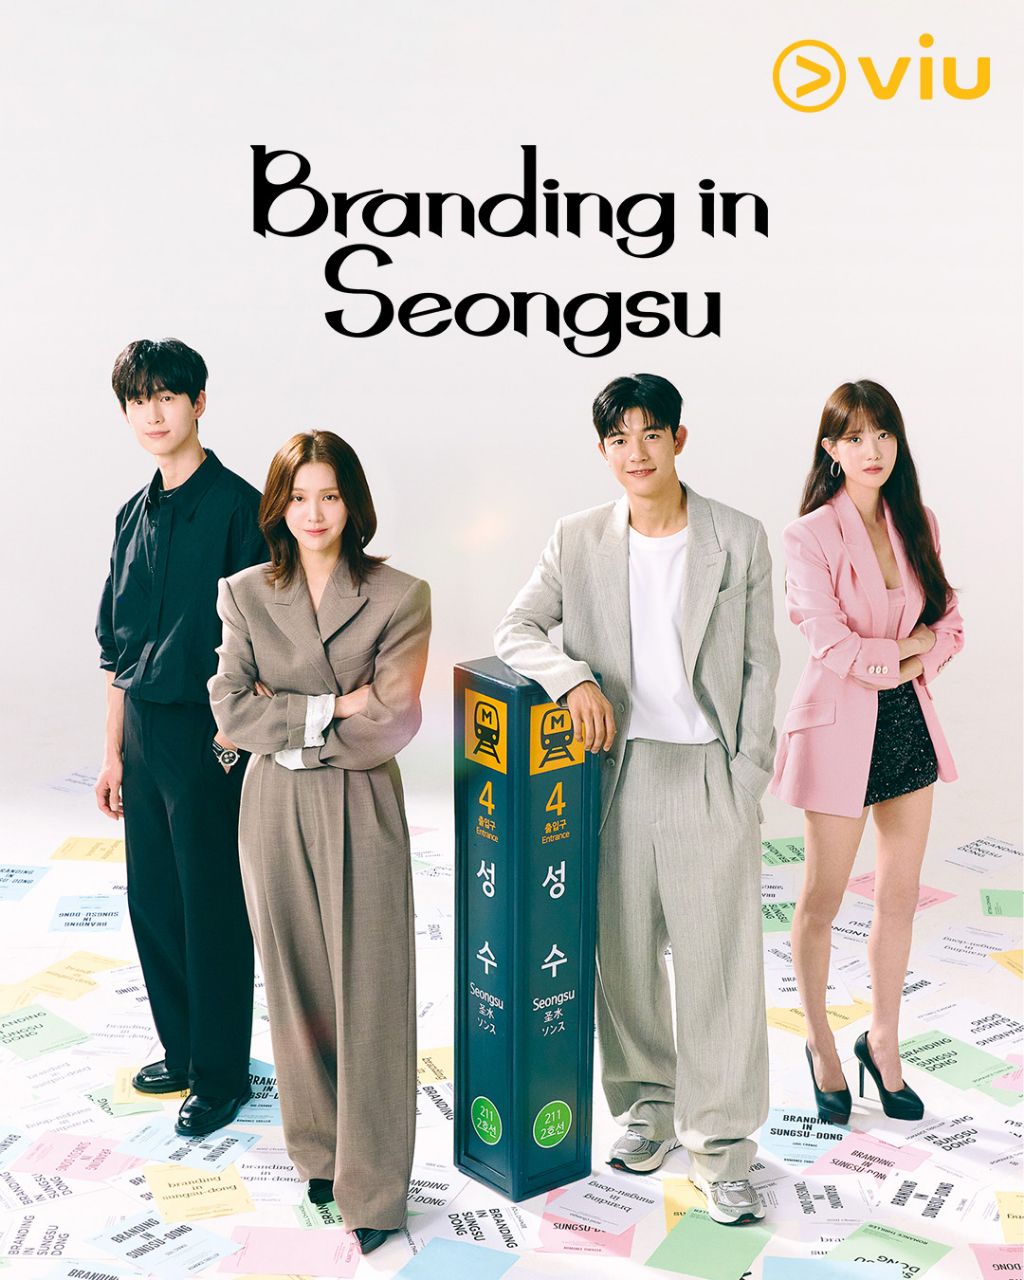 مسلسل العلامة التجارية في سيونغسو Branding in Seongsu الحلقة 14